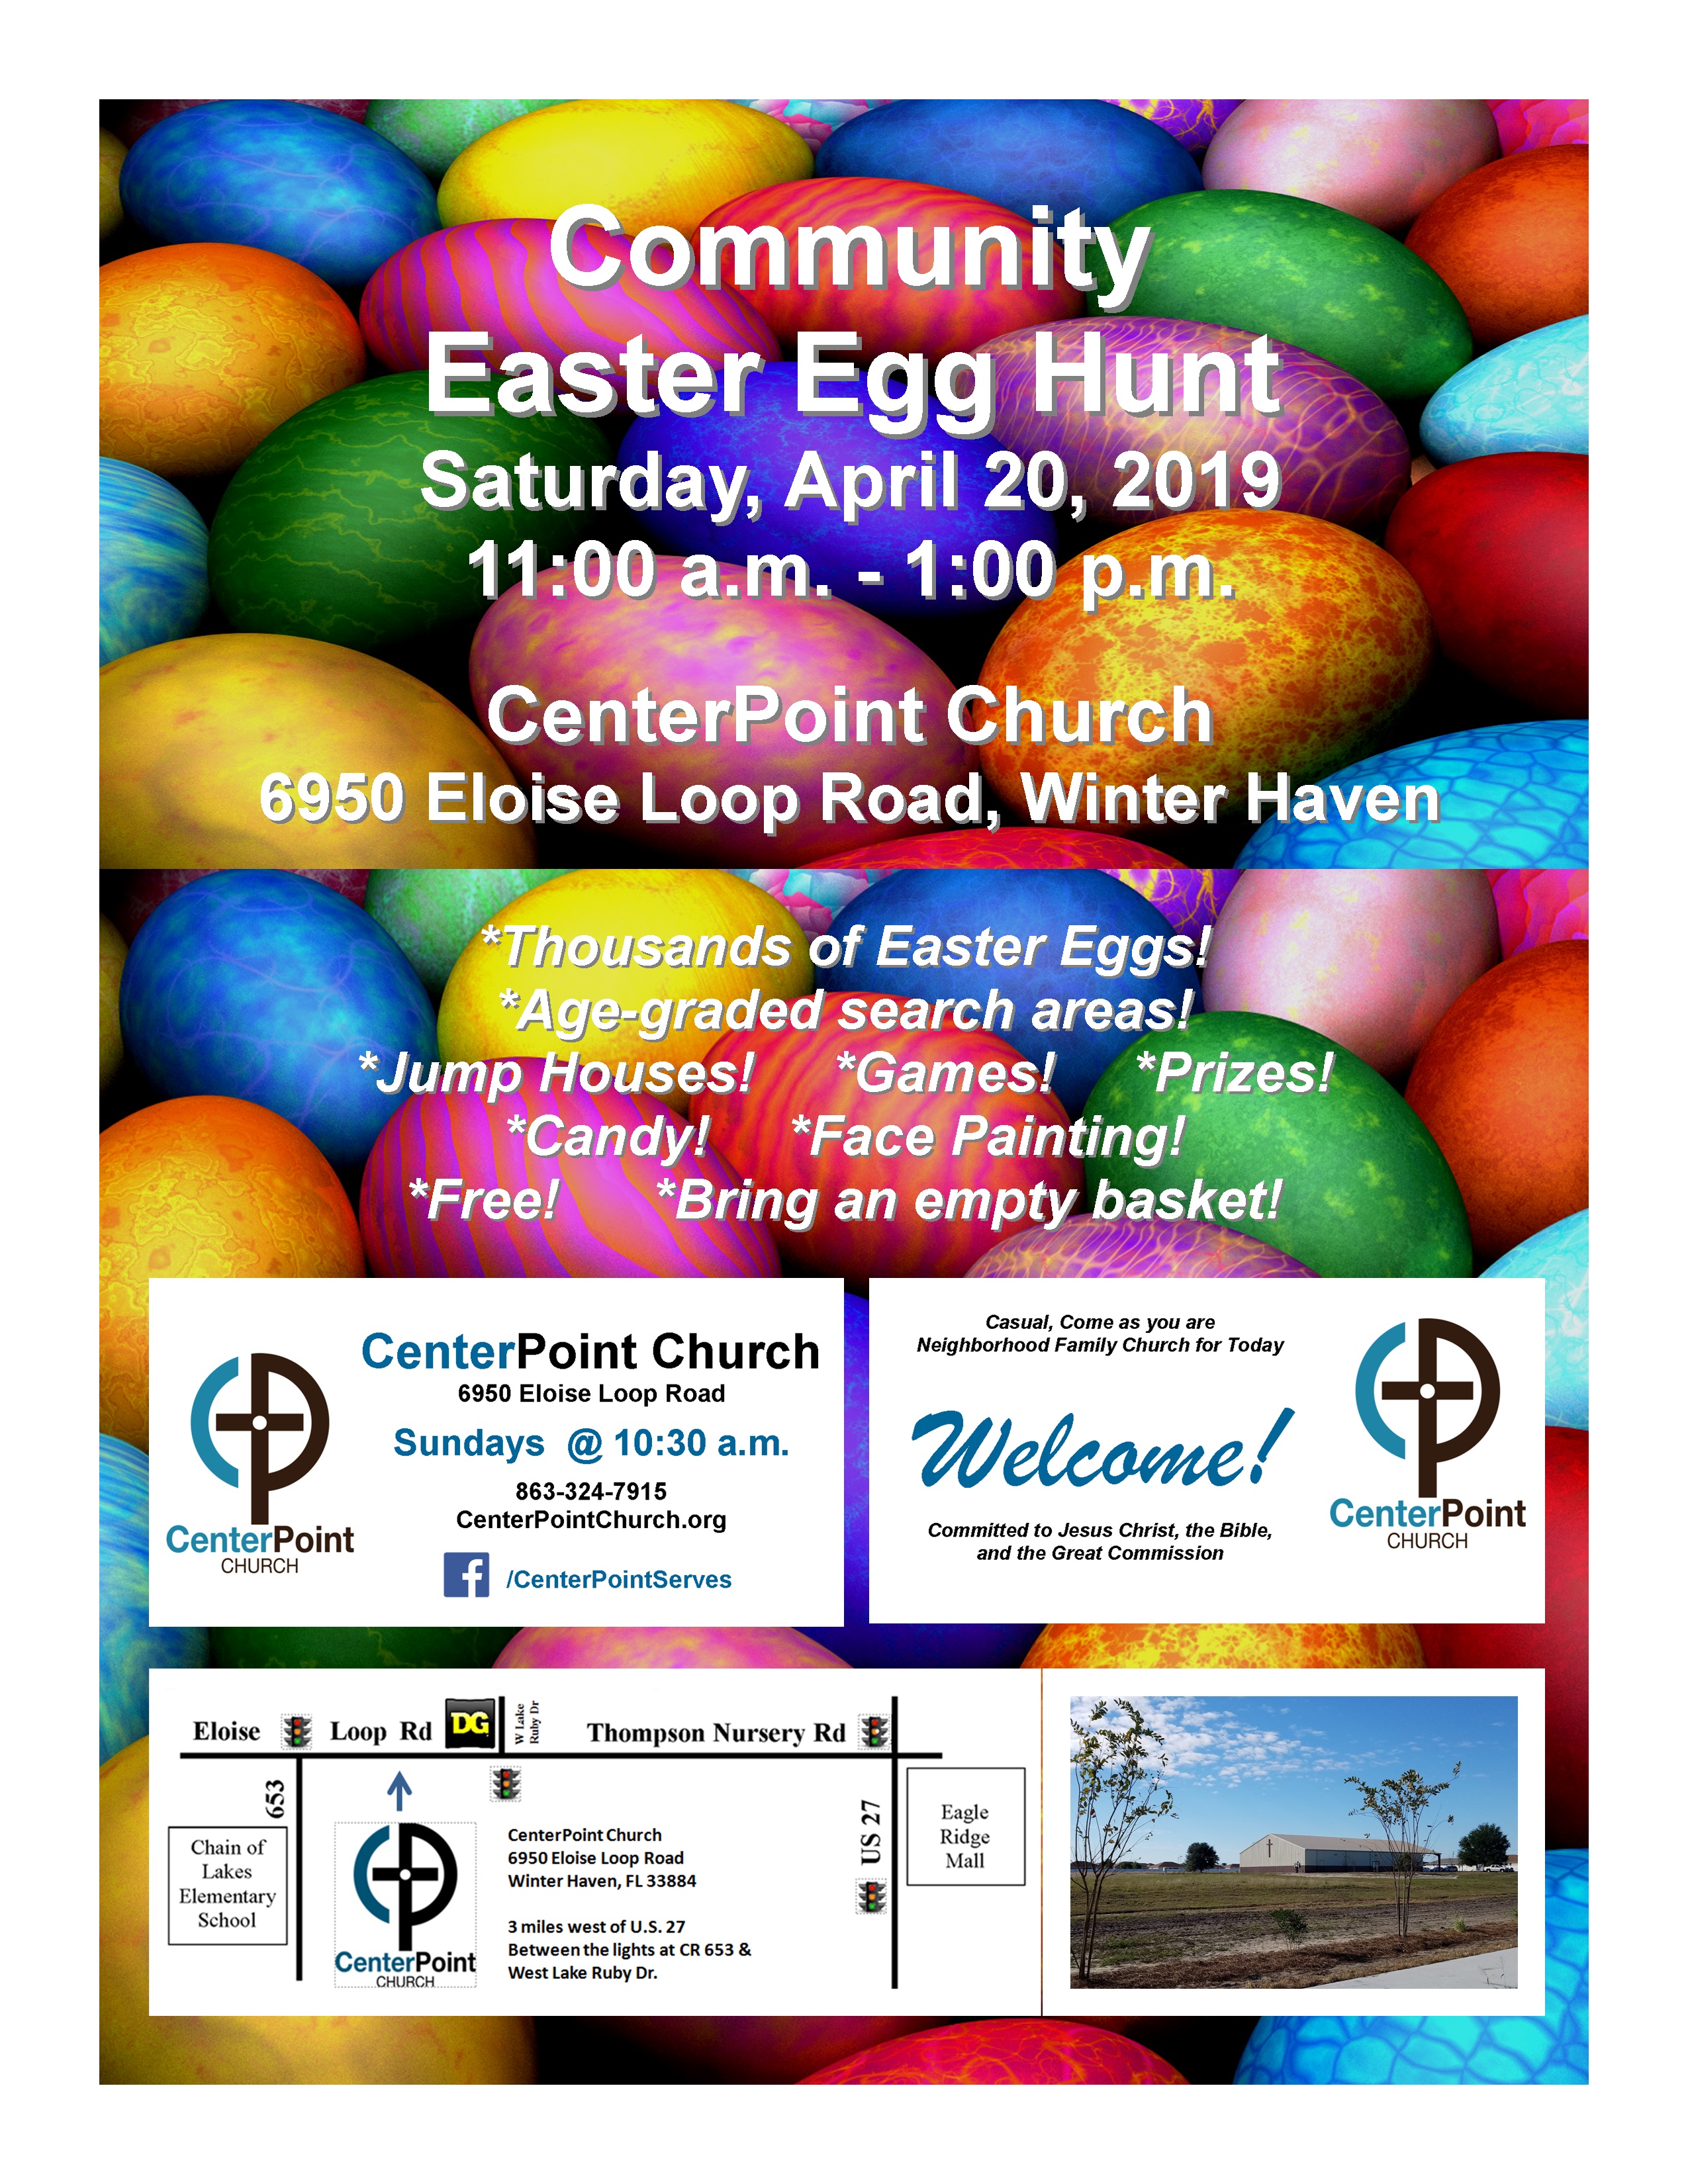 Community Easter Egg Hunt Center Point Church